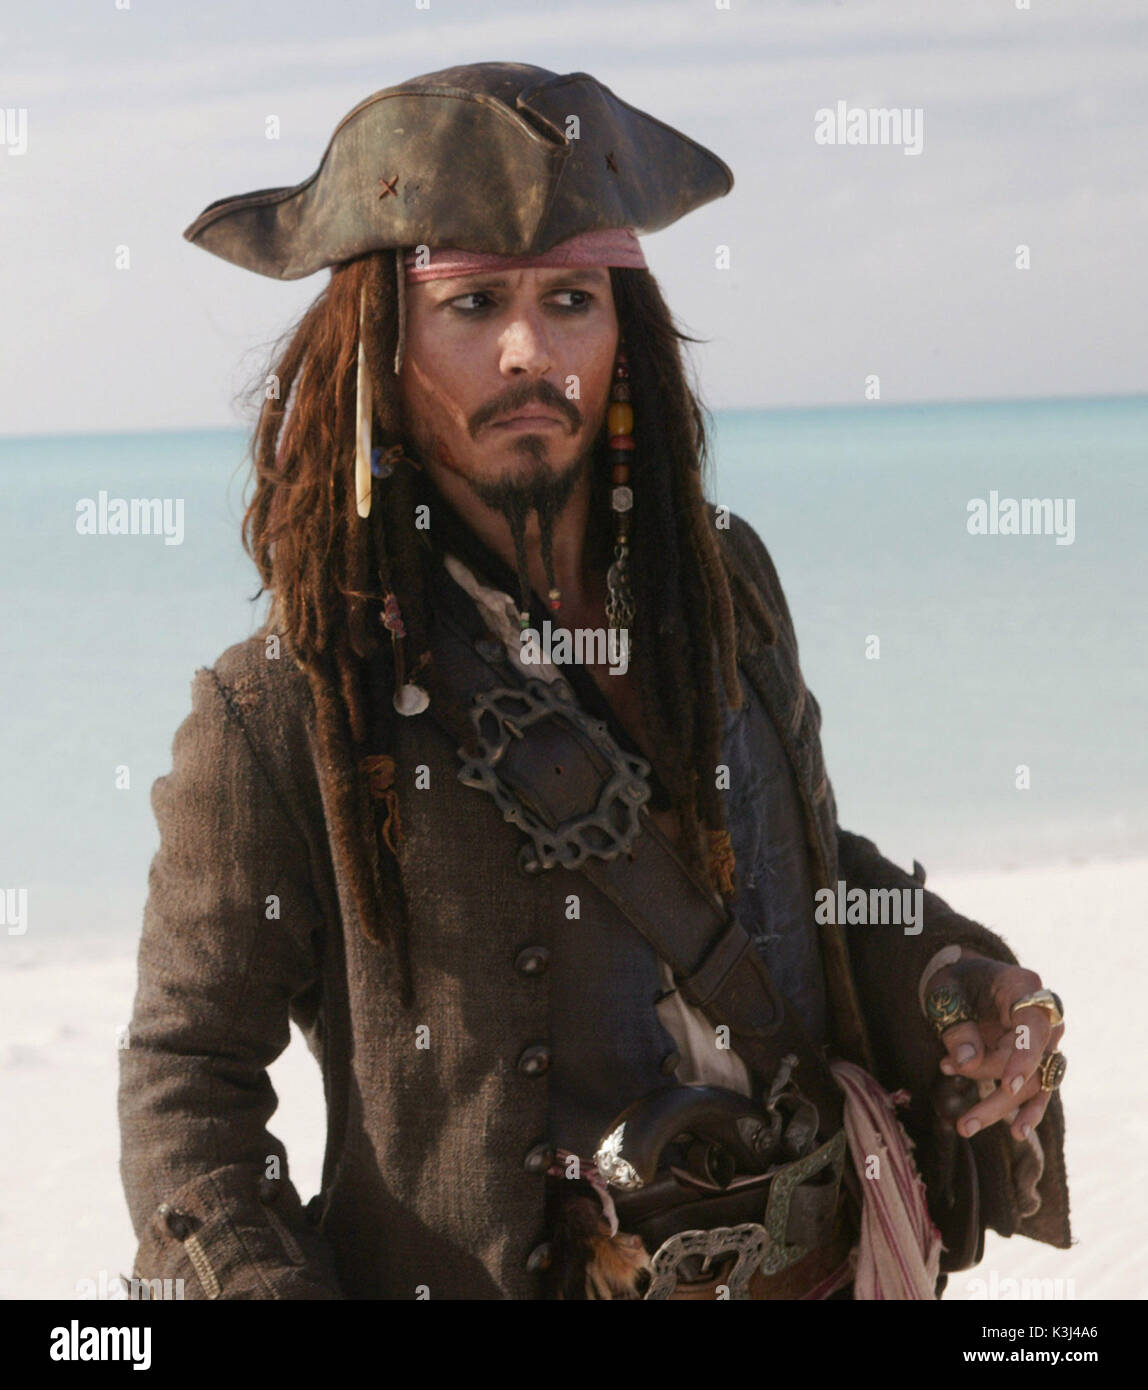 Piraten der Karibischen Meere: AM ENDE DER WELT [USA 2007] aka FLUCH DER  KARIBIK 3 Johnny Depp als Captain Jack Sparrow [7/8] Datum: 2007  Stockfotografie - Alamy